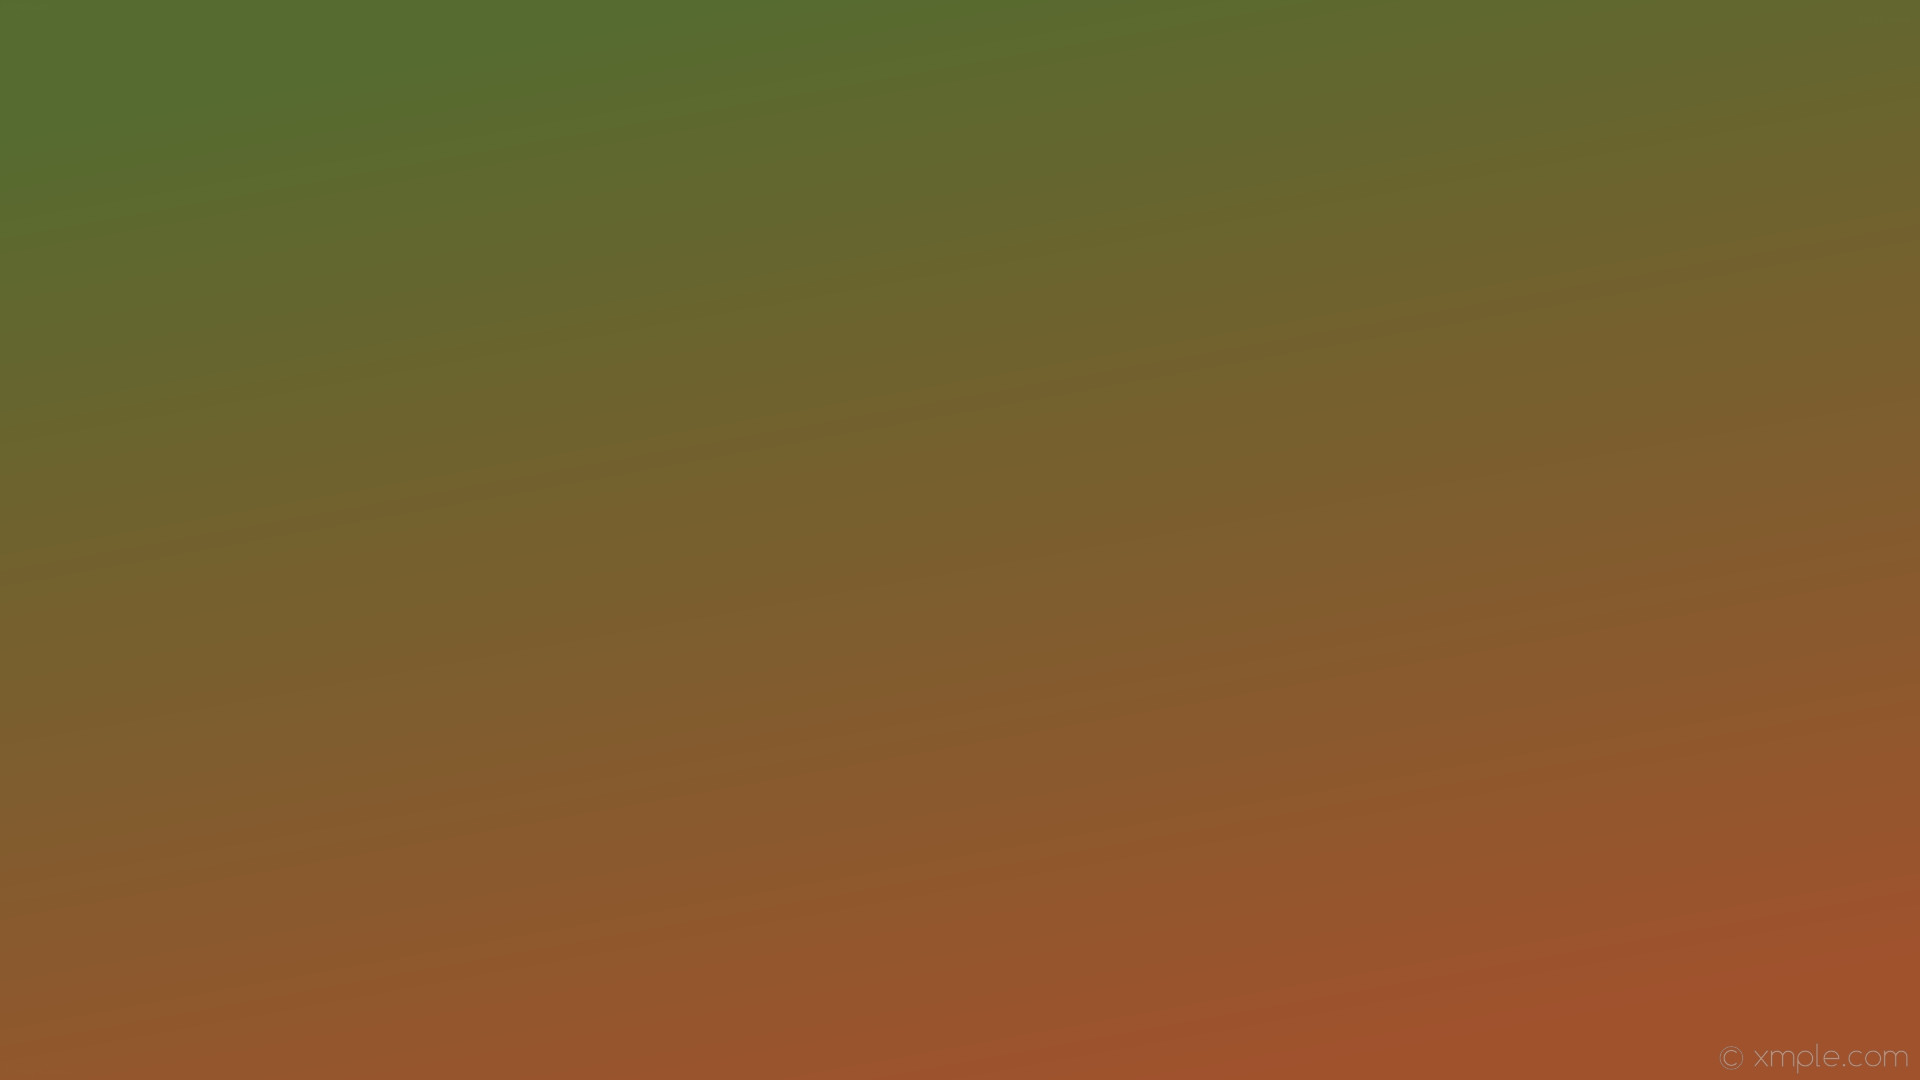 1920x1080 wallpaper linear green brown gradient sienna dark olive green #a0522d  #556b2f 300Â°